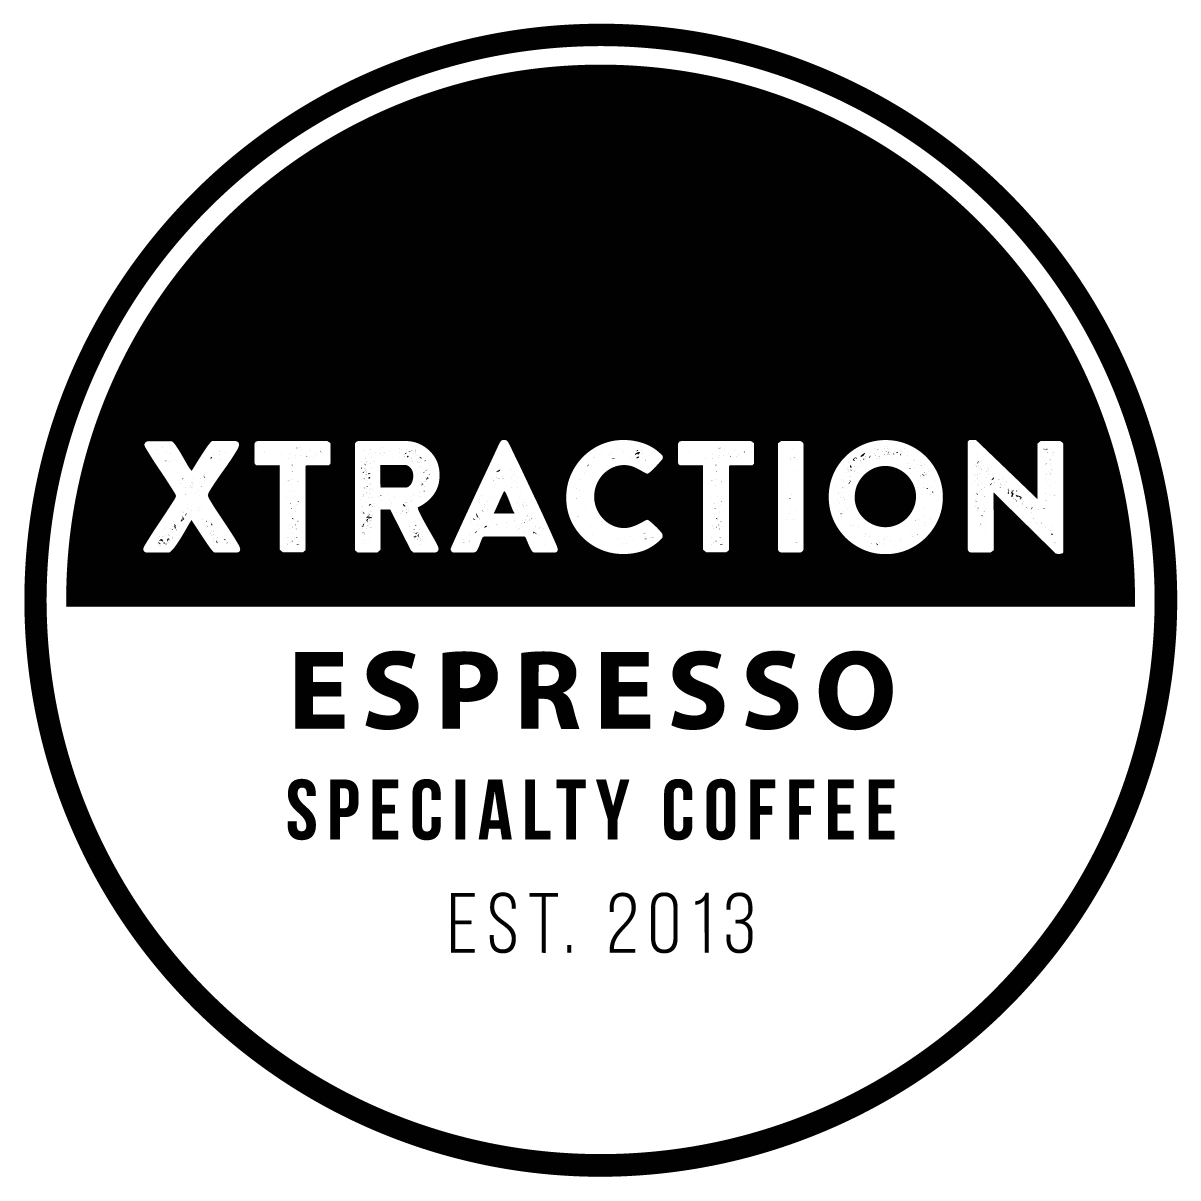 xtraction espresso app logo